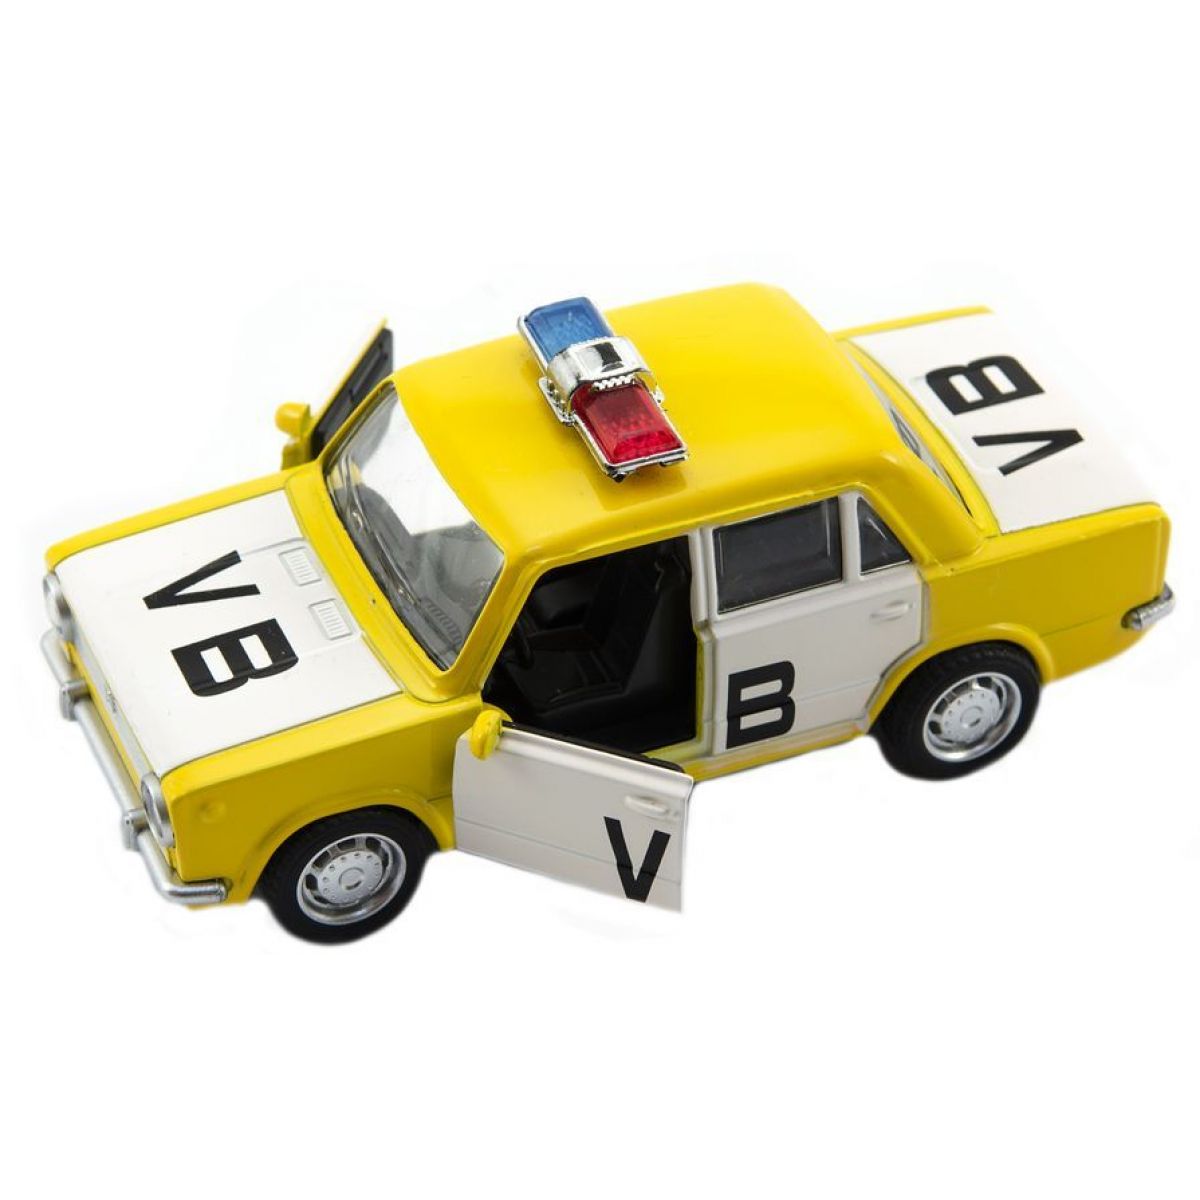 Teddies Auto Policie VB Lada 1200 VAZ 12cm